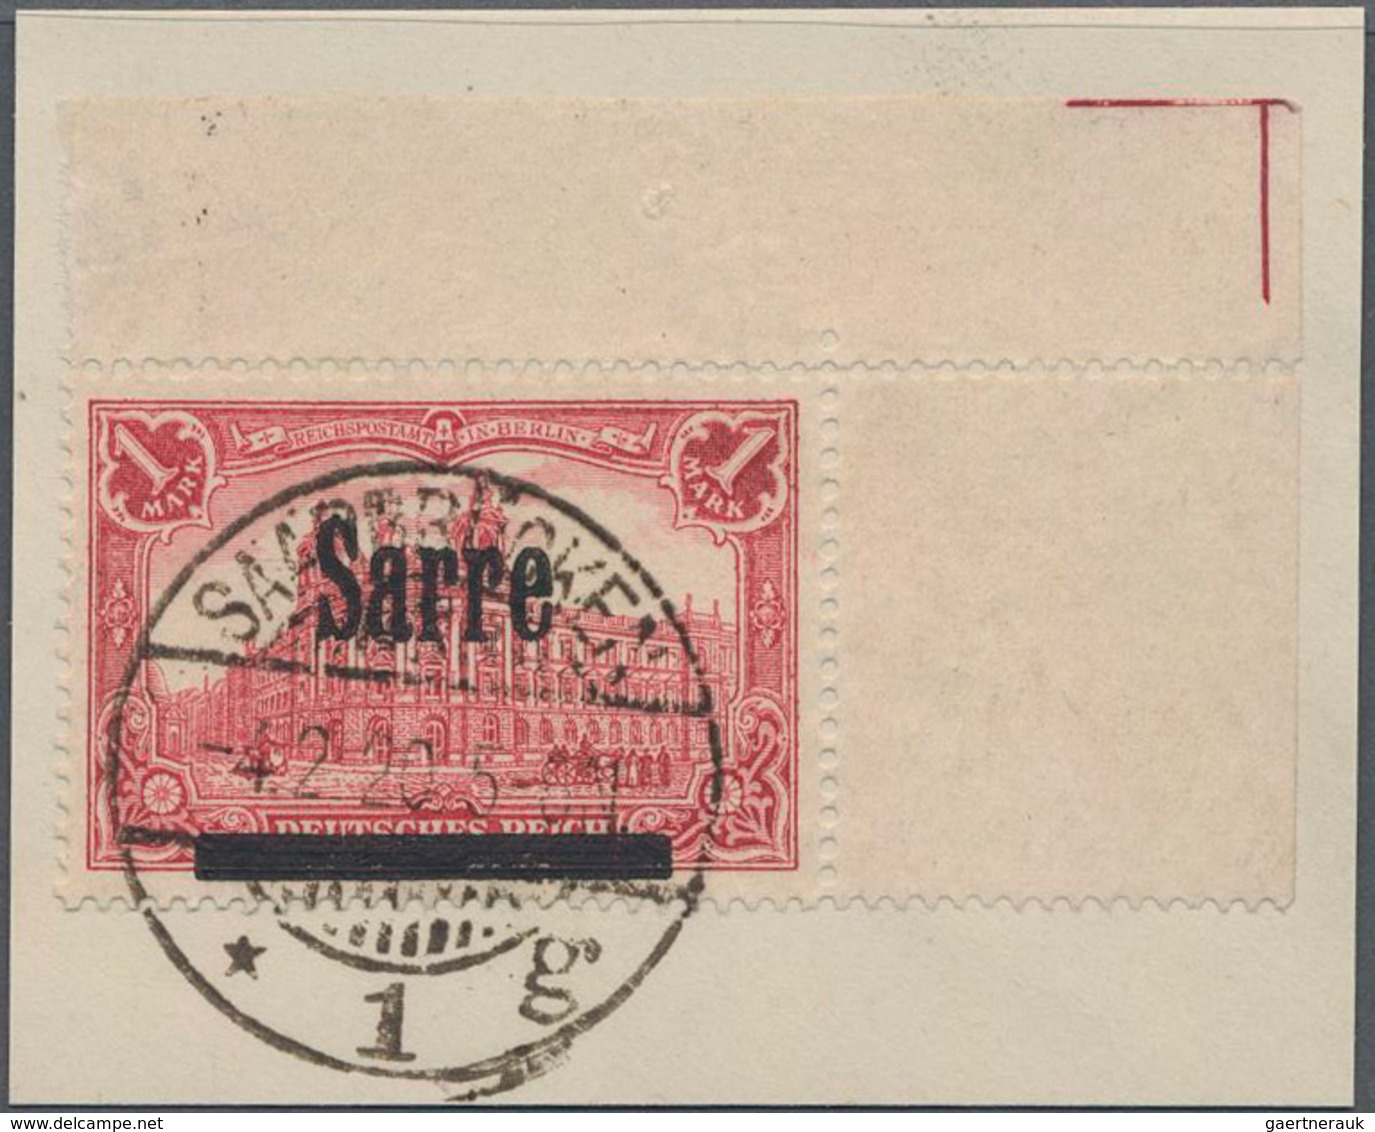 Deutsche Abstimmungsgebiete: Saargebiet: 1920, 1 M. Rechte Obere Luxus-Bogenecke Mit Bogenwinkel. - Unused Stamps